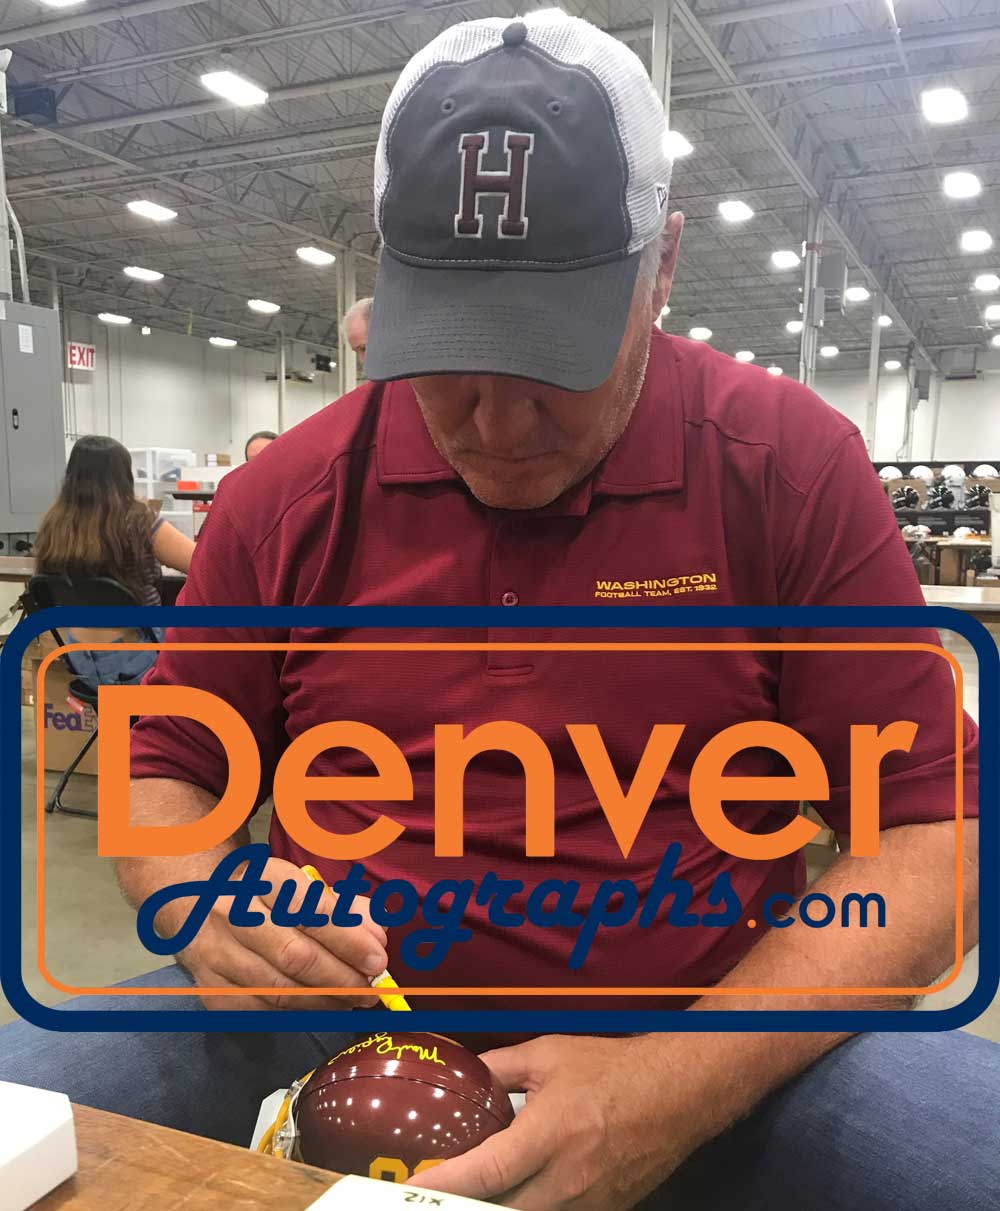 Mark Rypien Signed Washington Football Team VSR4 Mini Helmet HTTR BAS